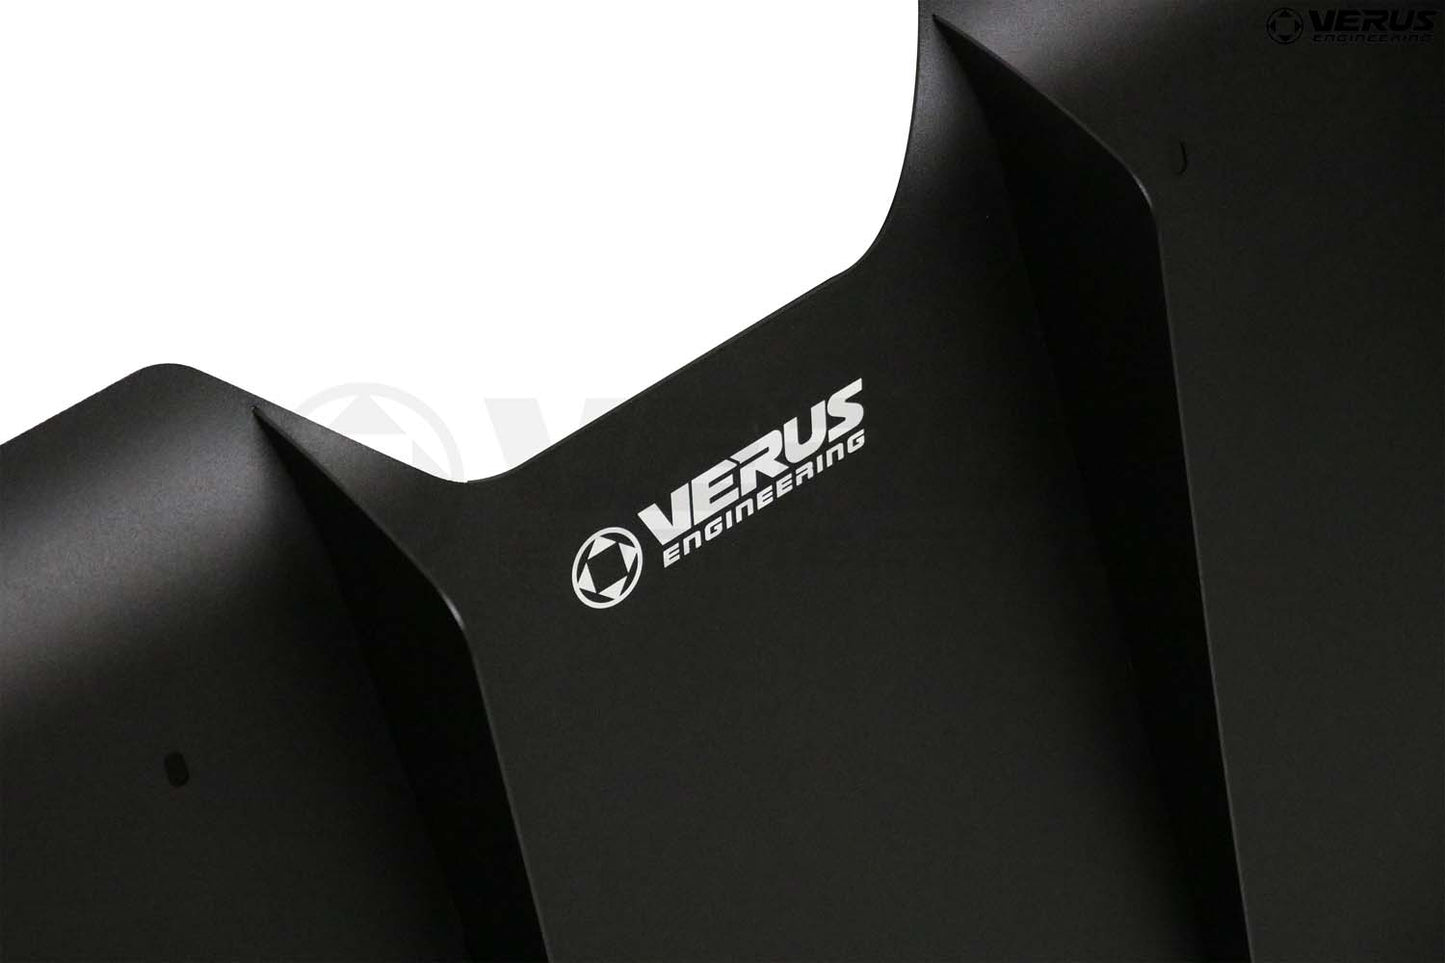 Verus - Rear Diffuser || A9x